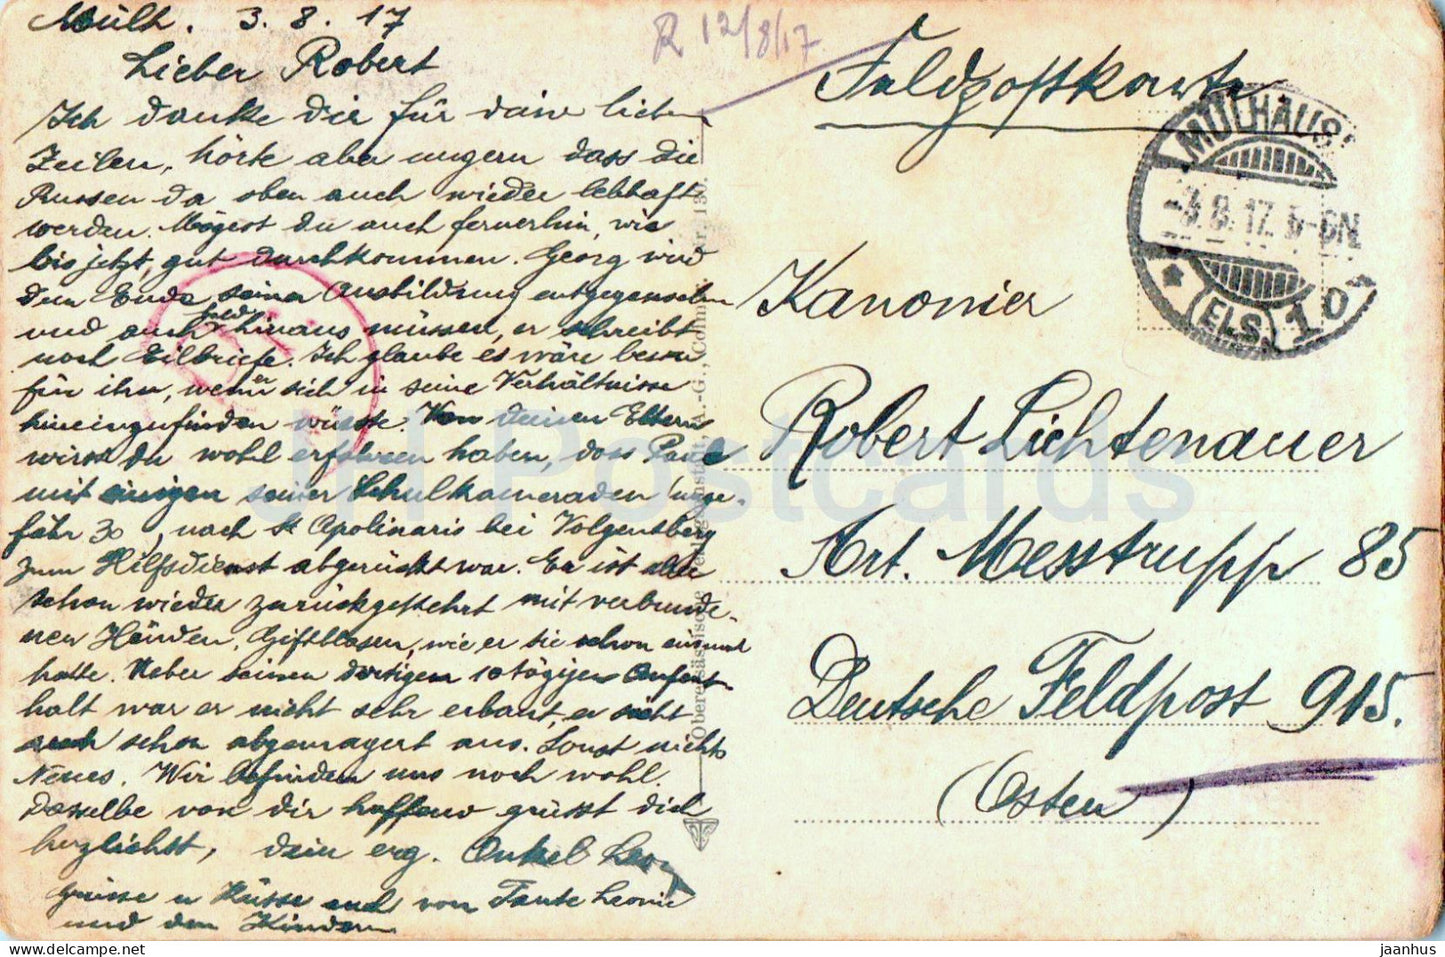 Schnierlach mit Buchenkopf - Feldpost - courrier militaire - carte postale ancienne - 1917 - France - utilisé 